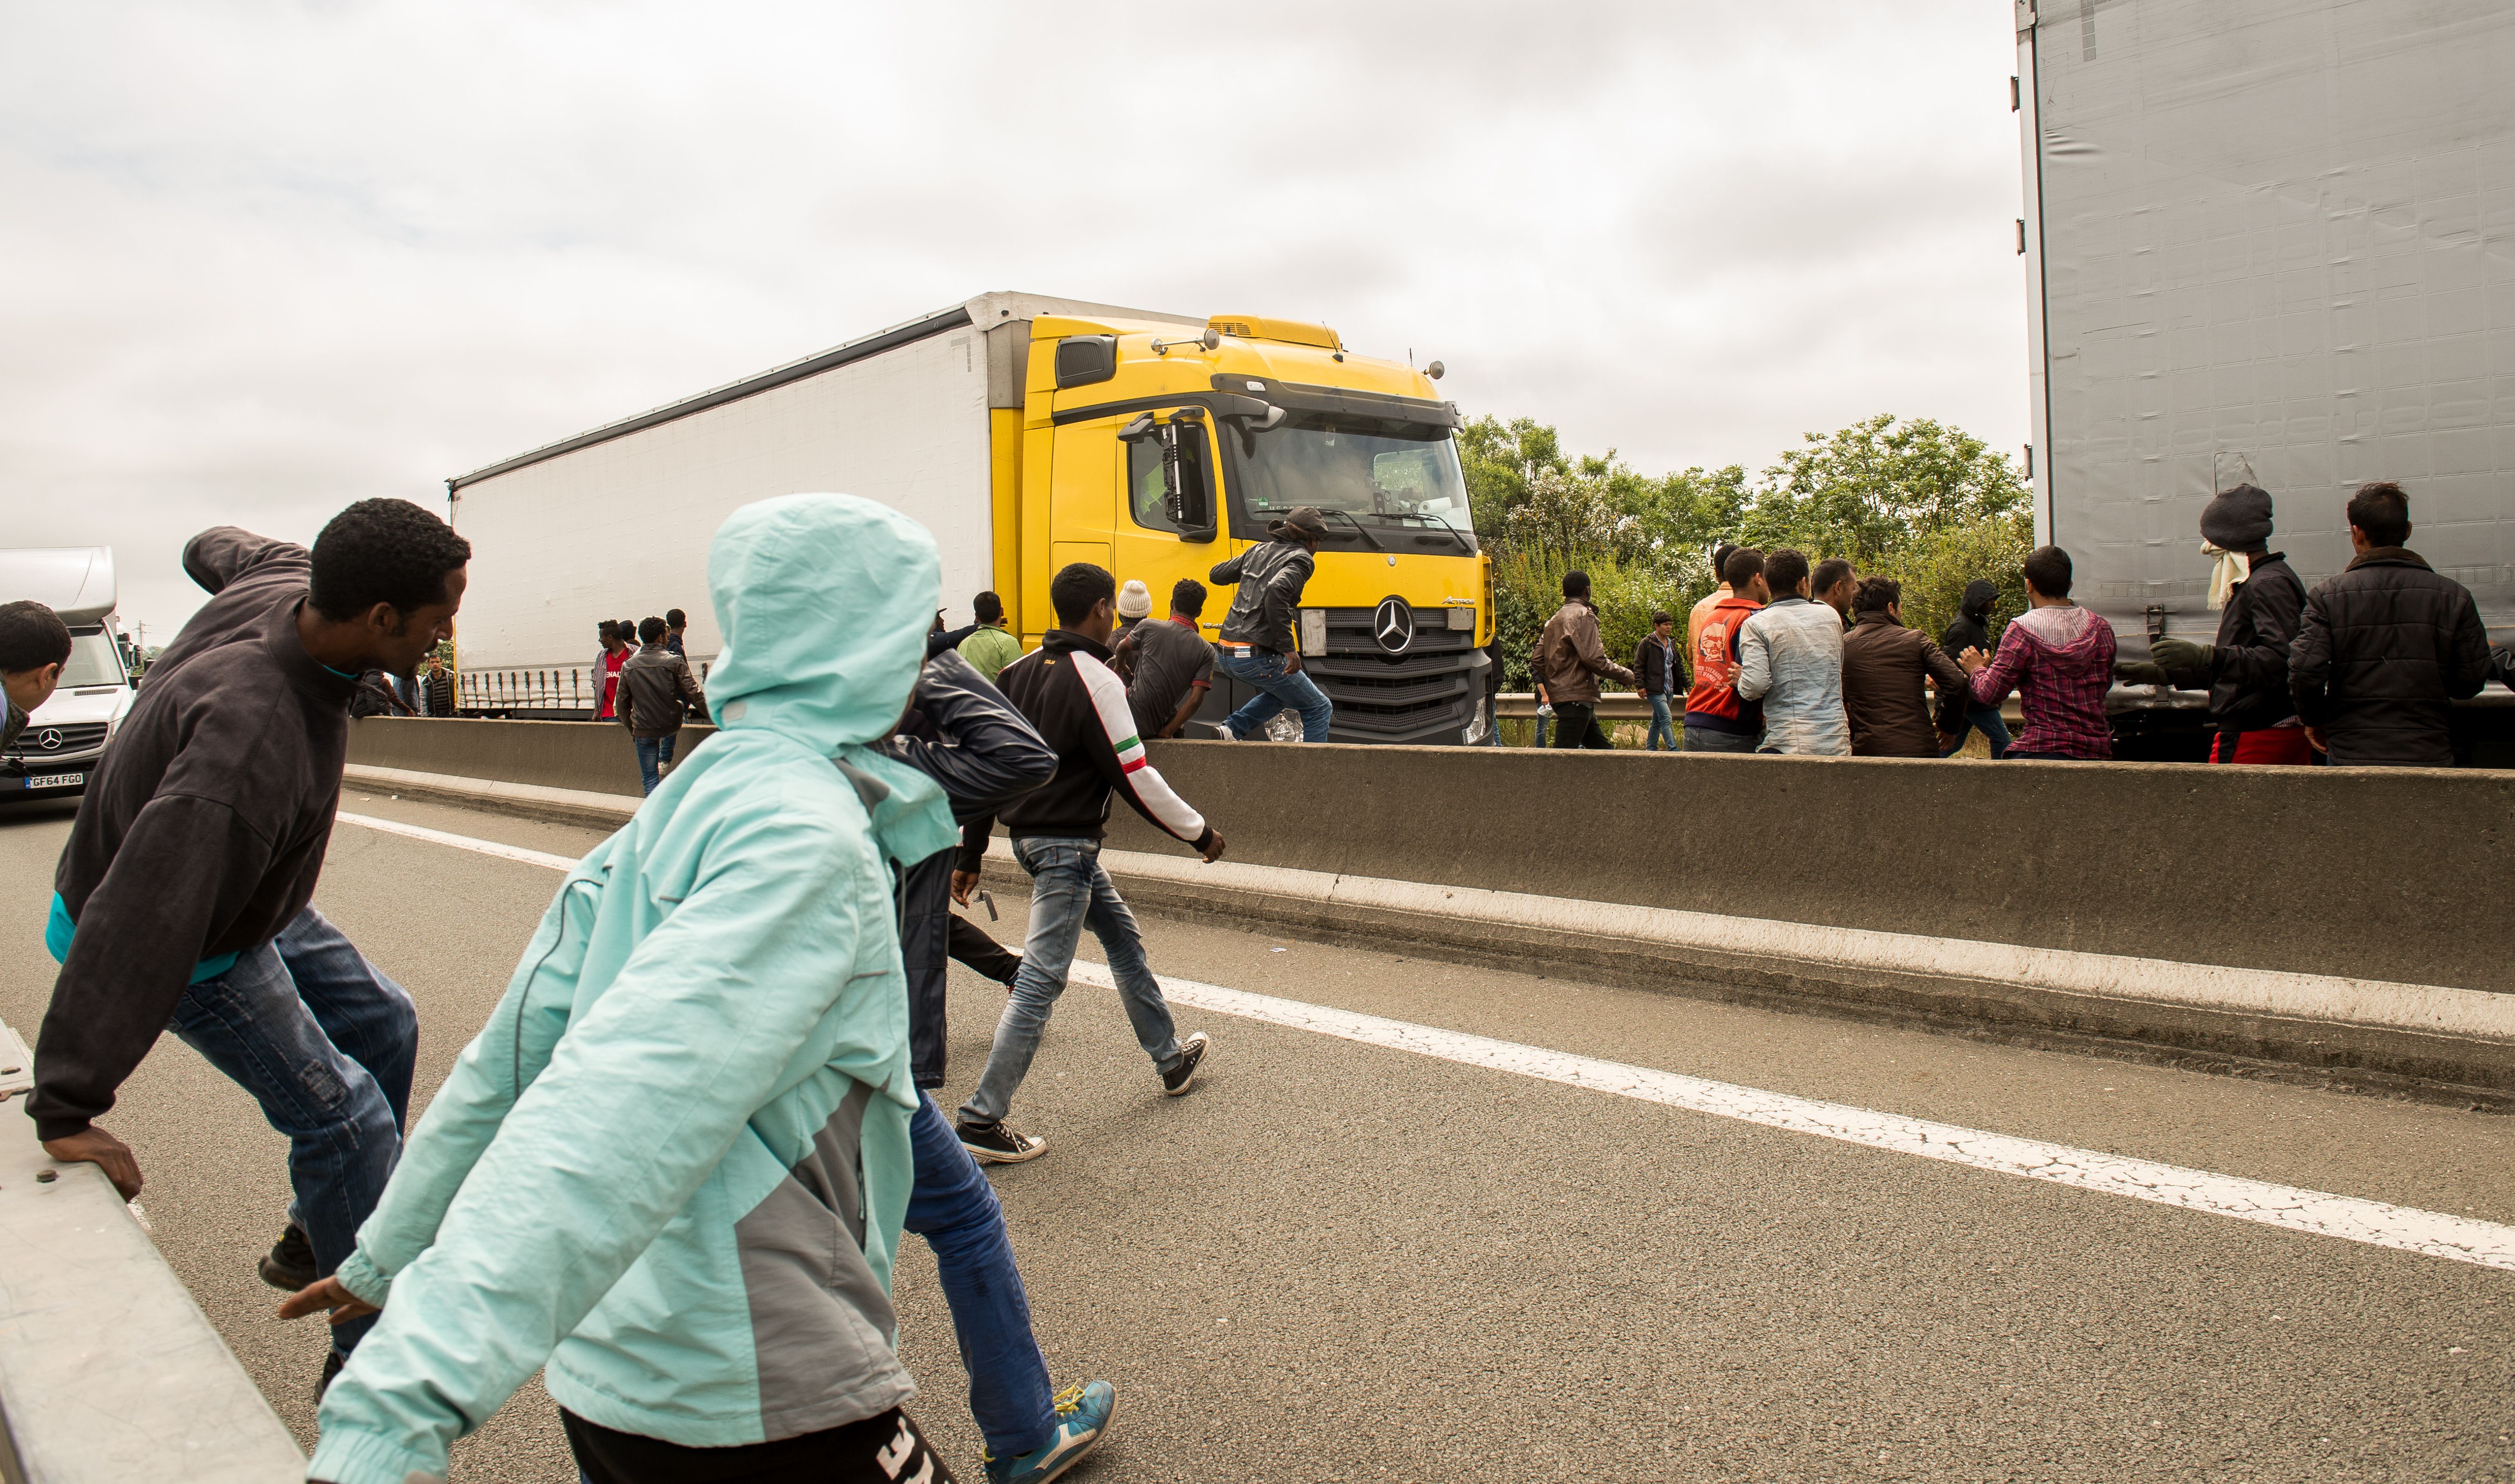 Französische Regierung lehnt neues Flüchtlingslager in Calais strikt ab